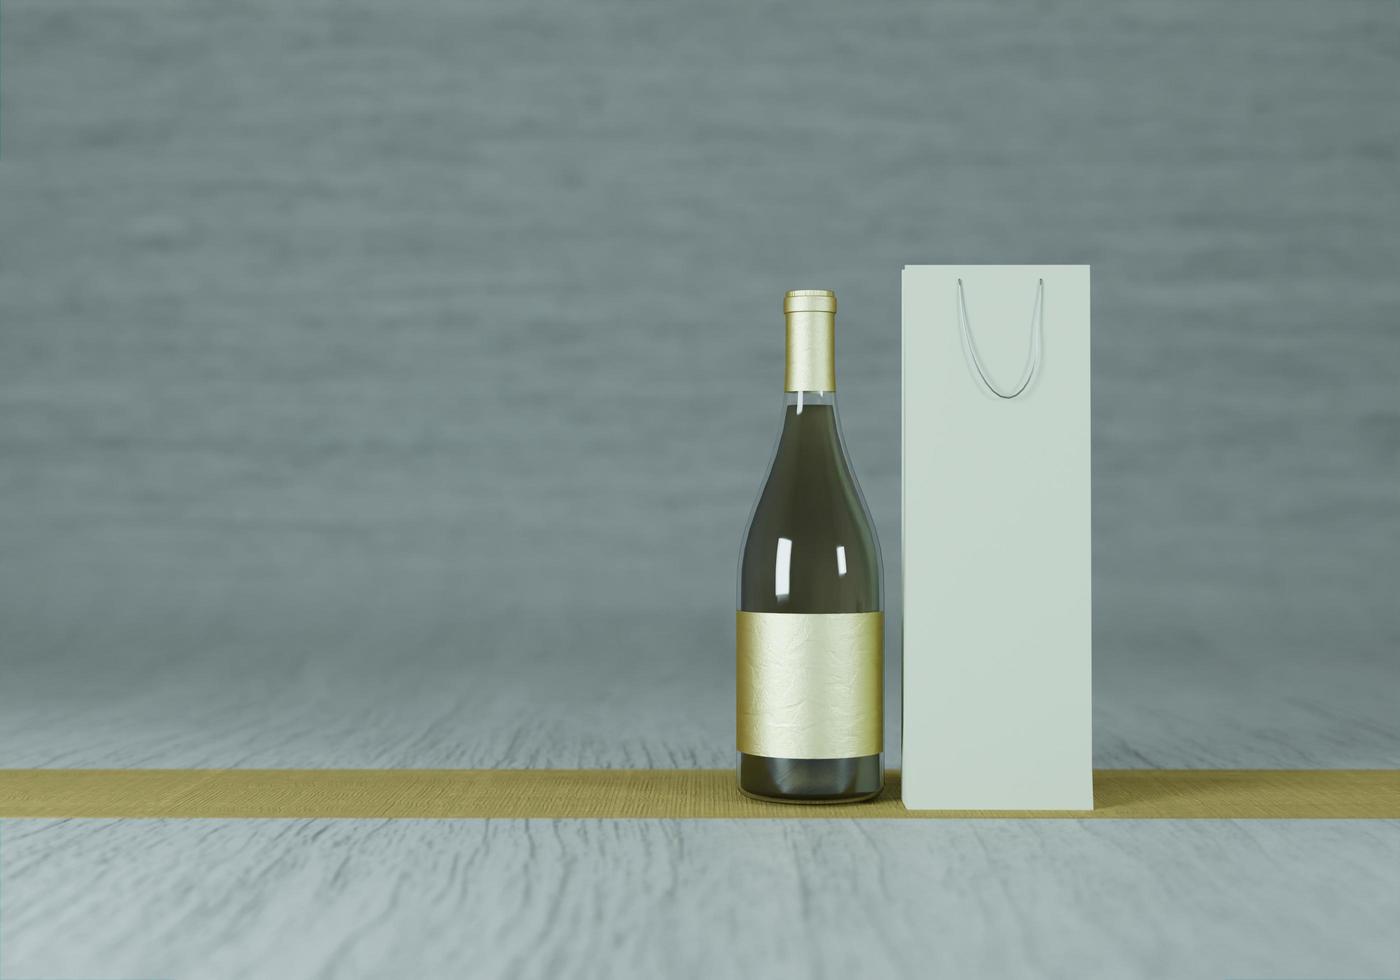 bouteille de vin posée sur le sol, 3d photo